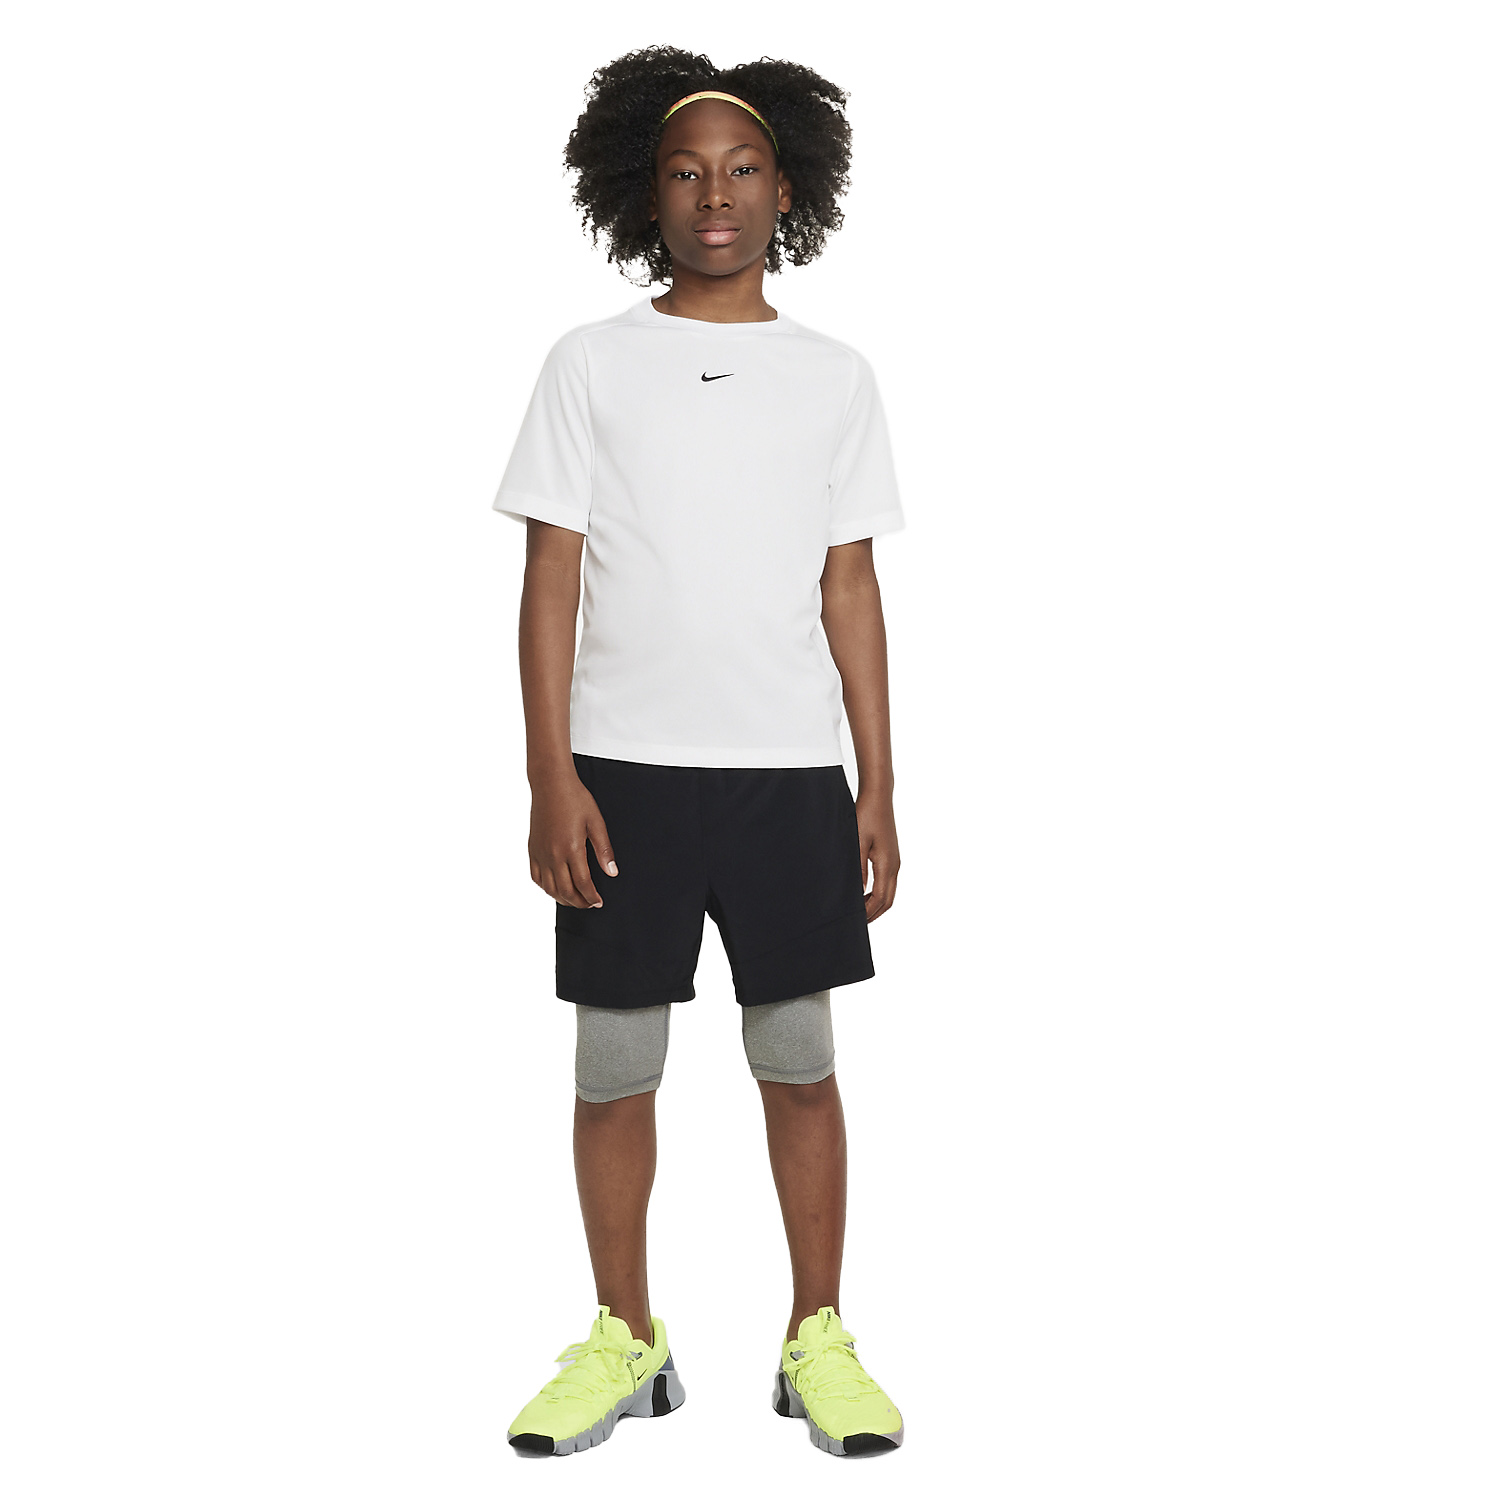 Nike Dri-FIT Multi Maglietta Bambino - White/Black